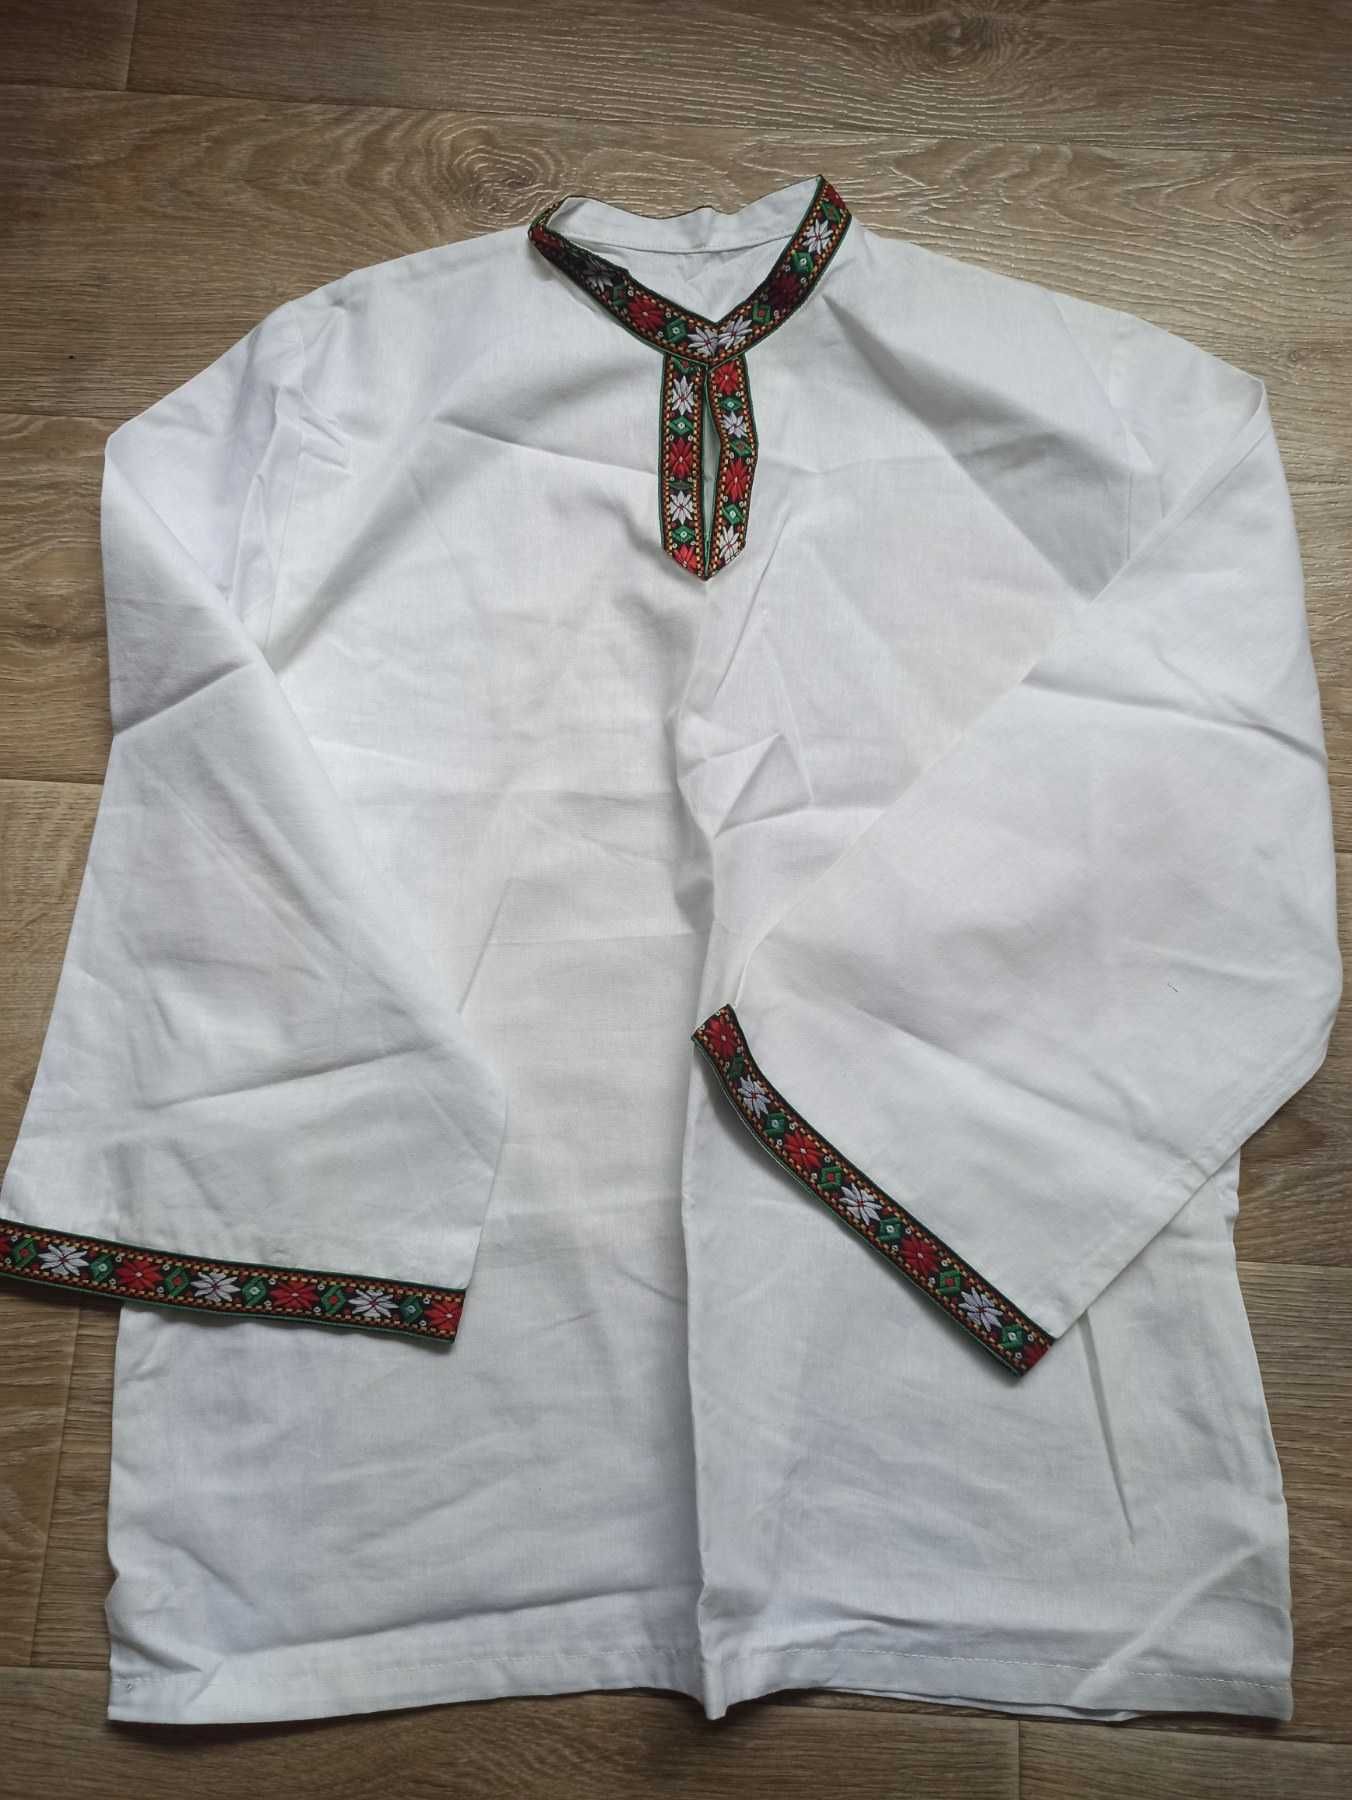 Мъжка бяла риза с етно мотиви, размер М/Л